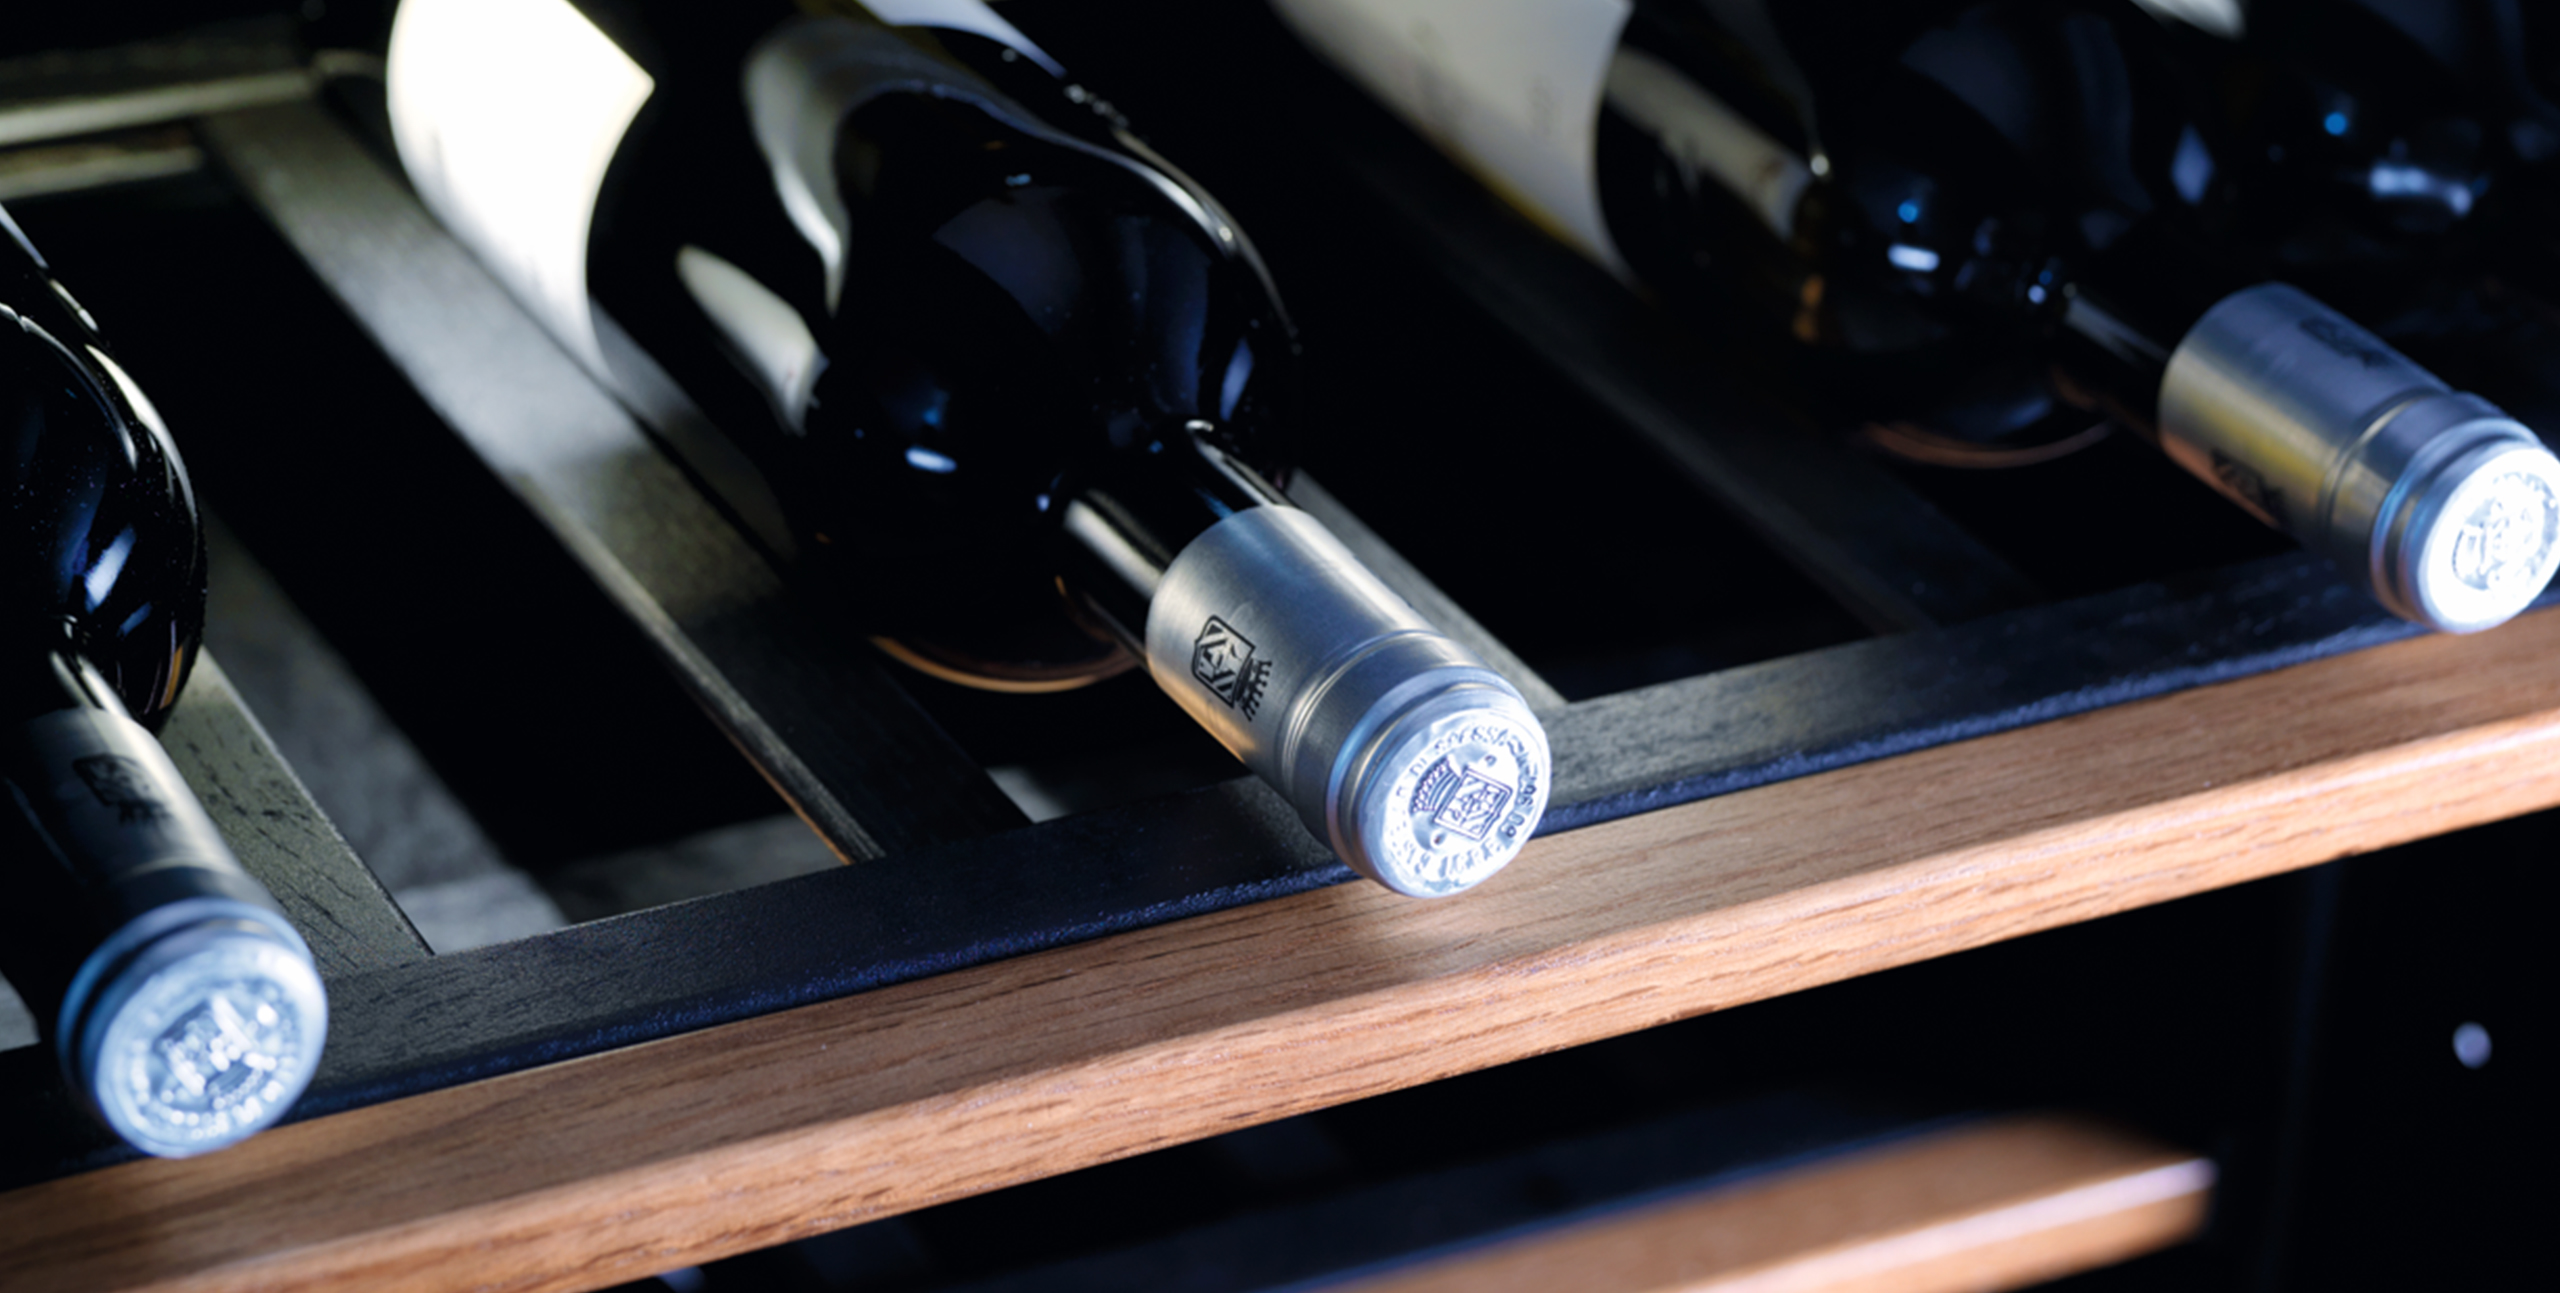 Vinoteca: the wine cabinet